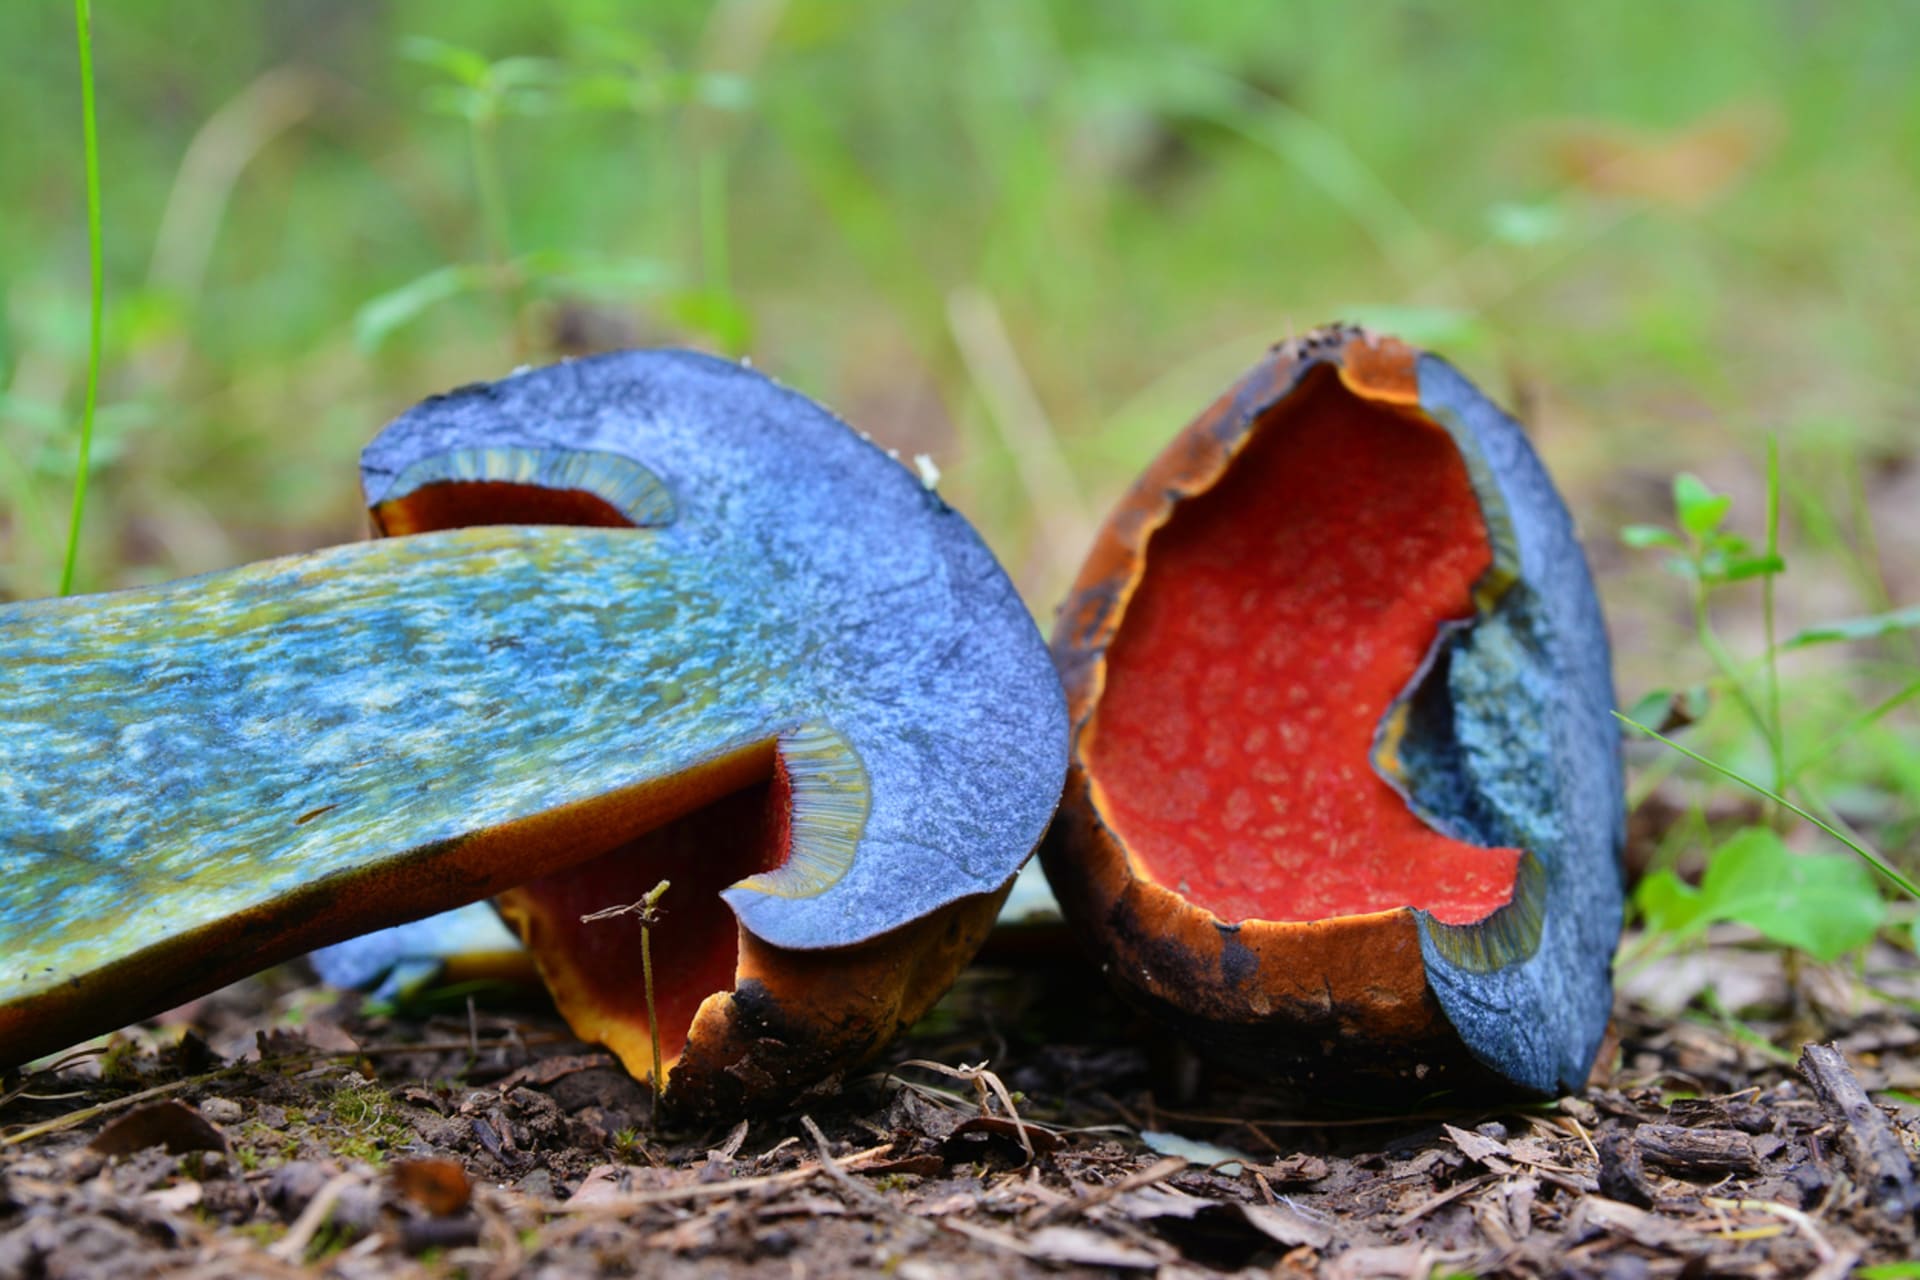 Hřib kovář, jeden z nejznámější zástupců jedlých modráků, krásných hřibovitých hub, které při rozkrojení rychle zmodrají. 